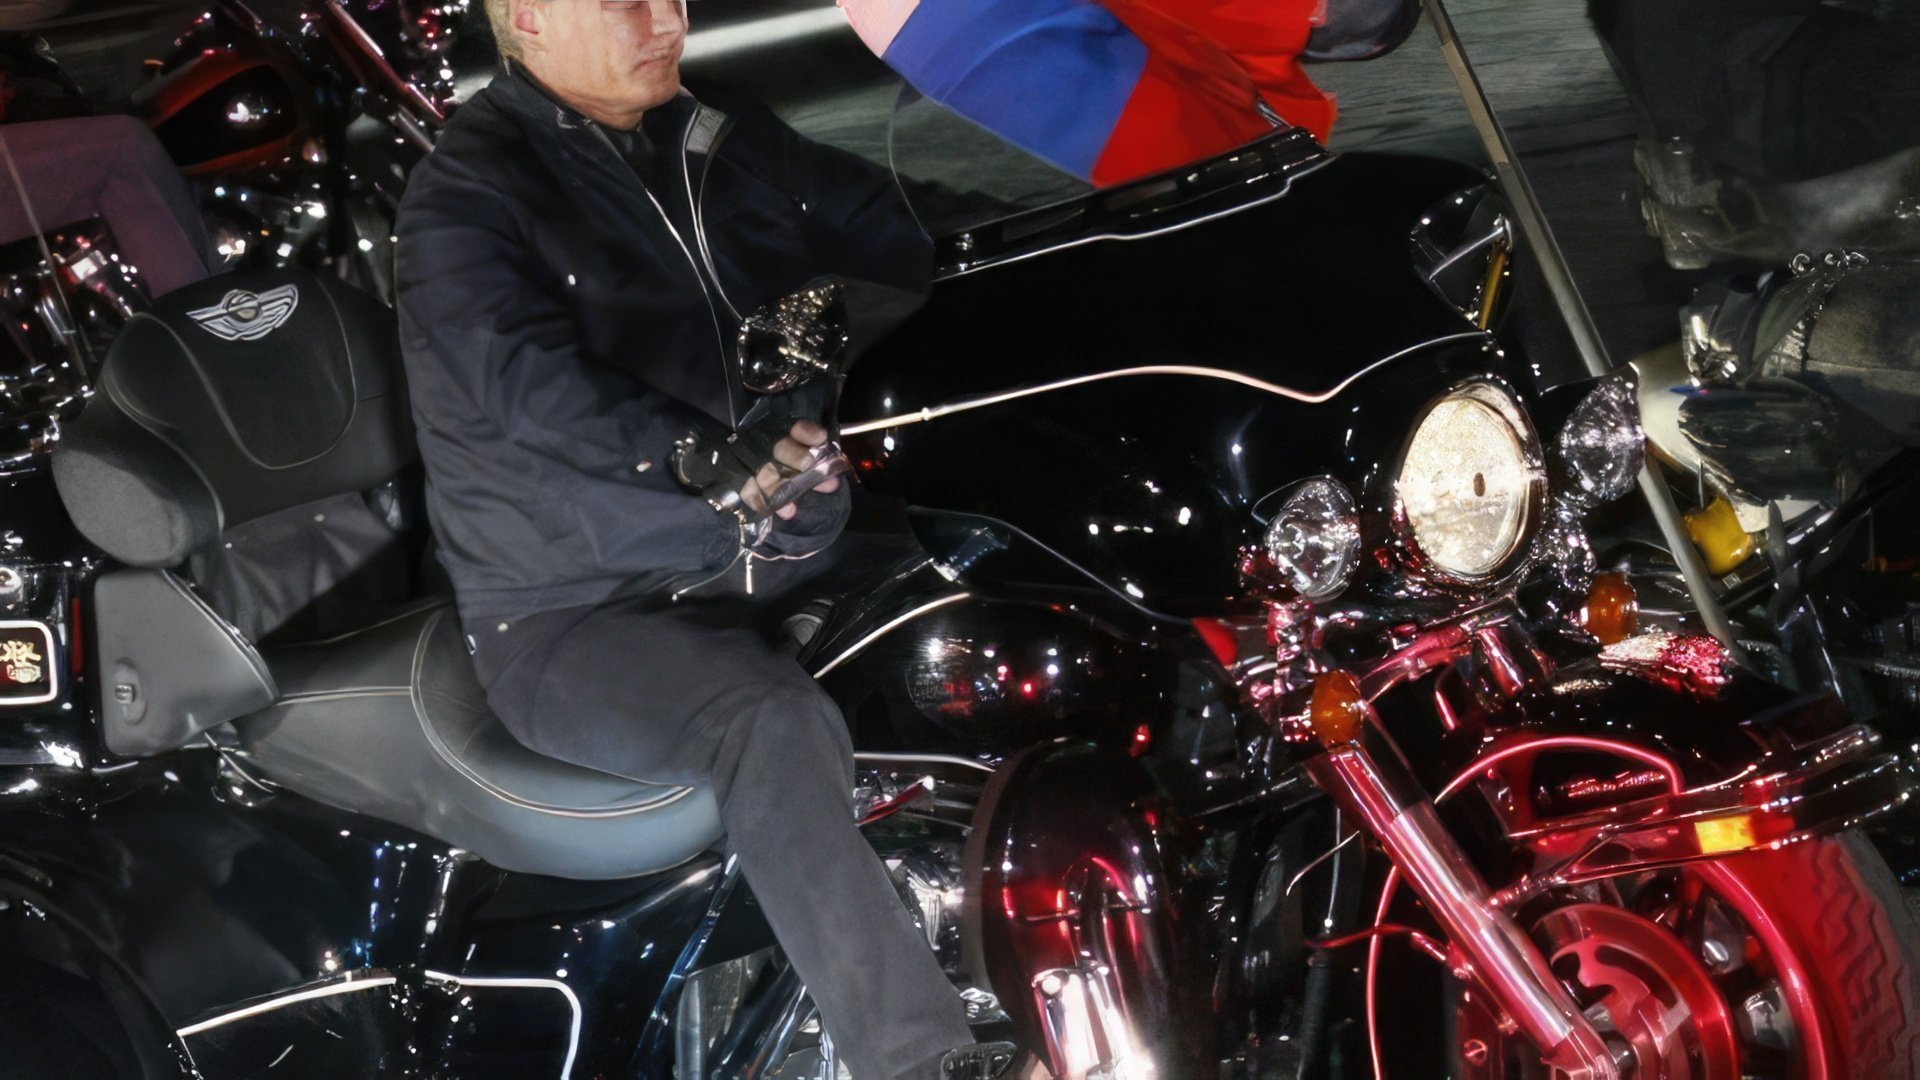 Putin on Harley-Davidson